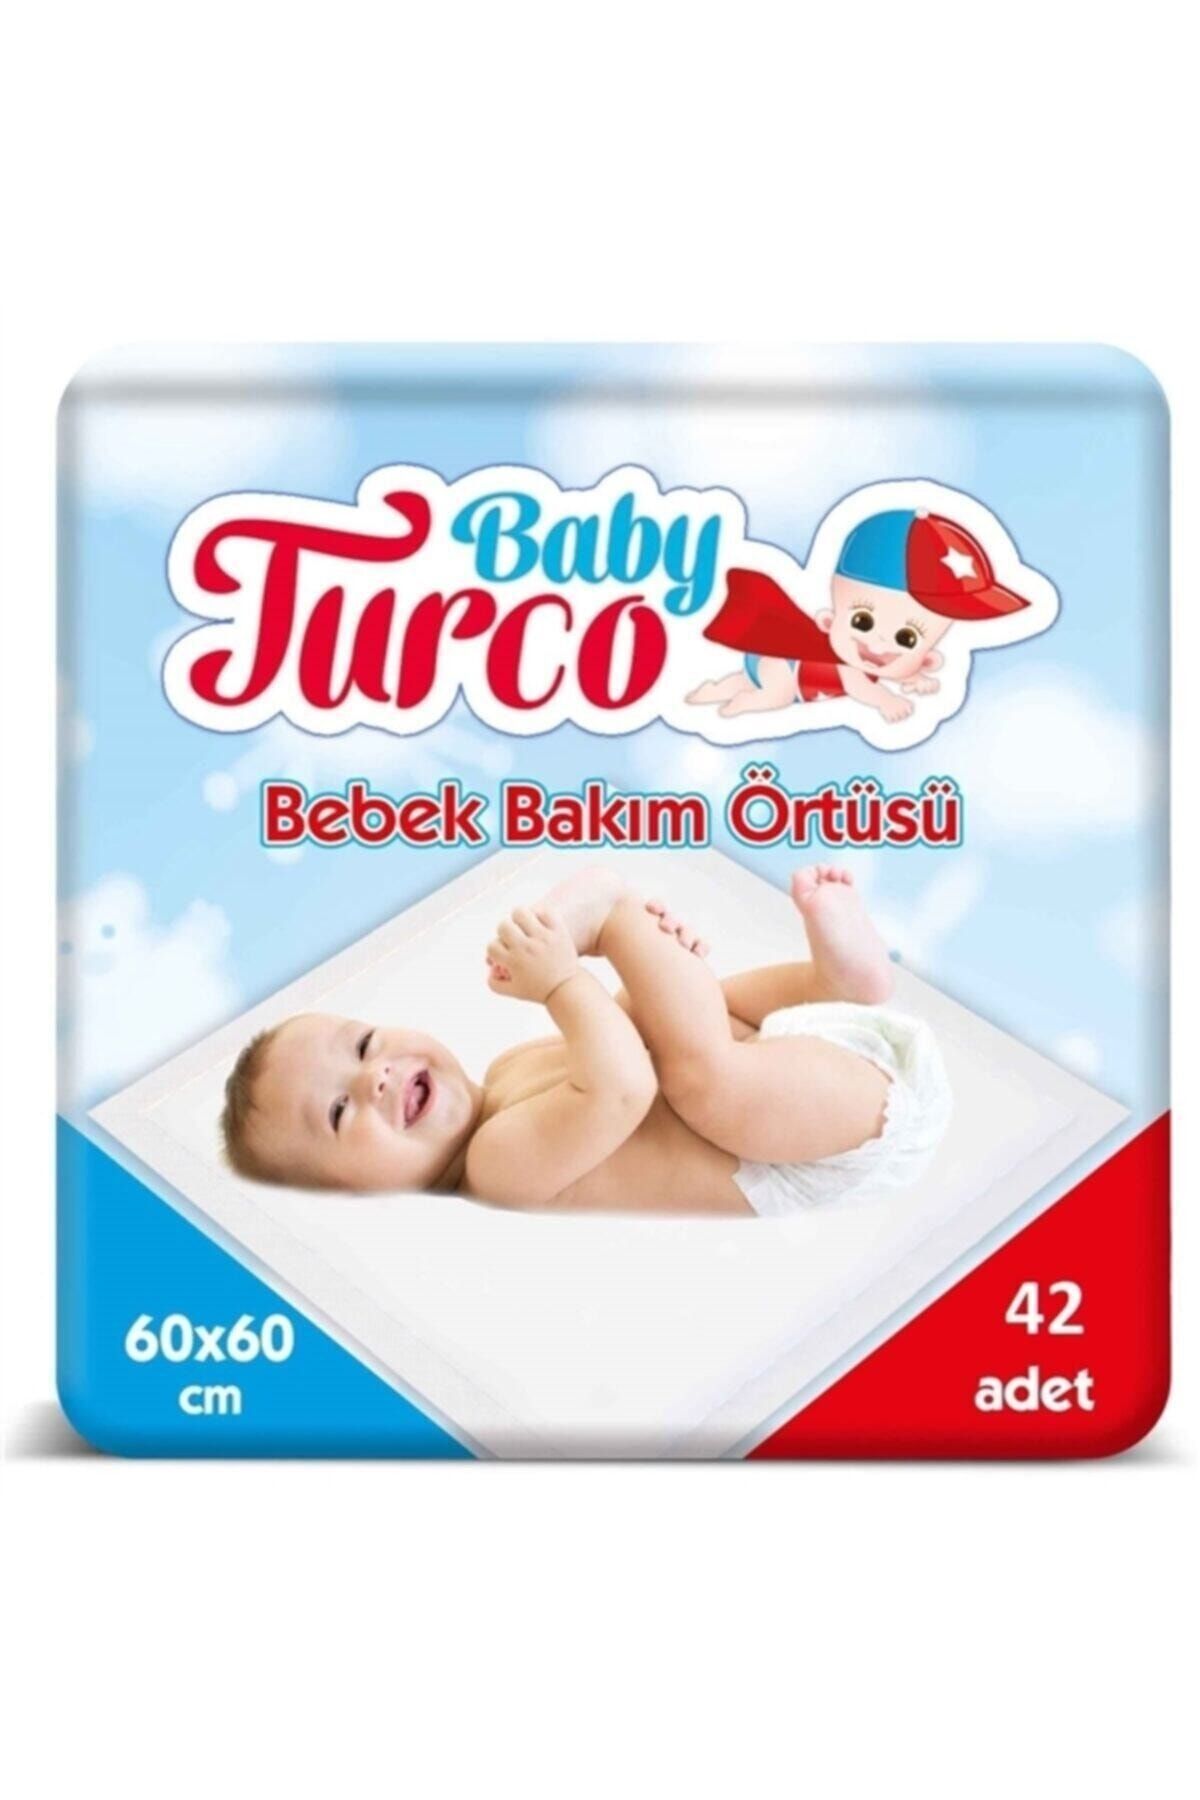 Baby Turco Bebek Bakım Örtüsü 60x60 Cm 42 Adet Bebek Bakım Örtüsü 60x60 Cm 42 Adet